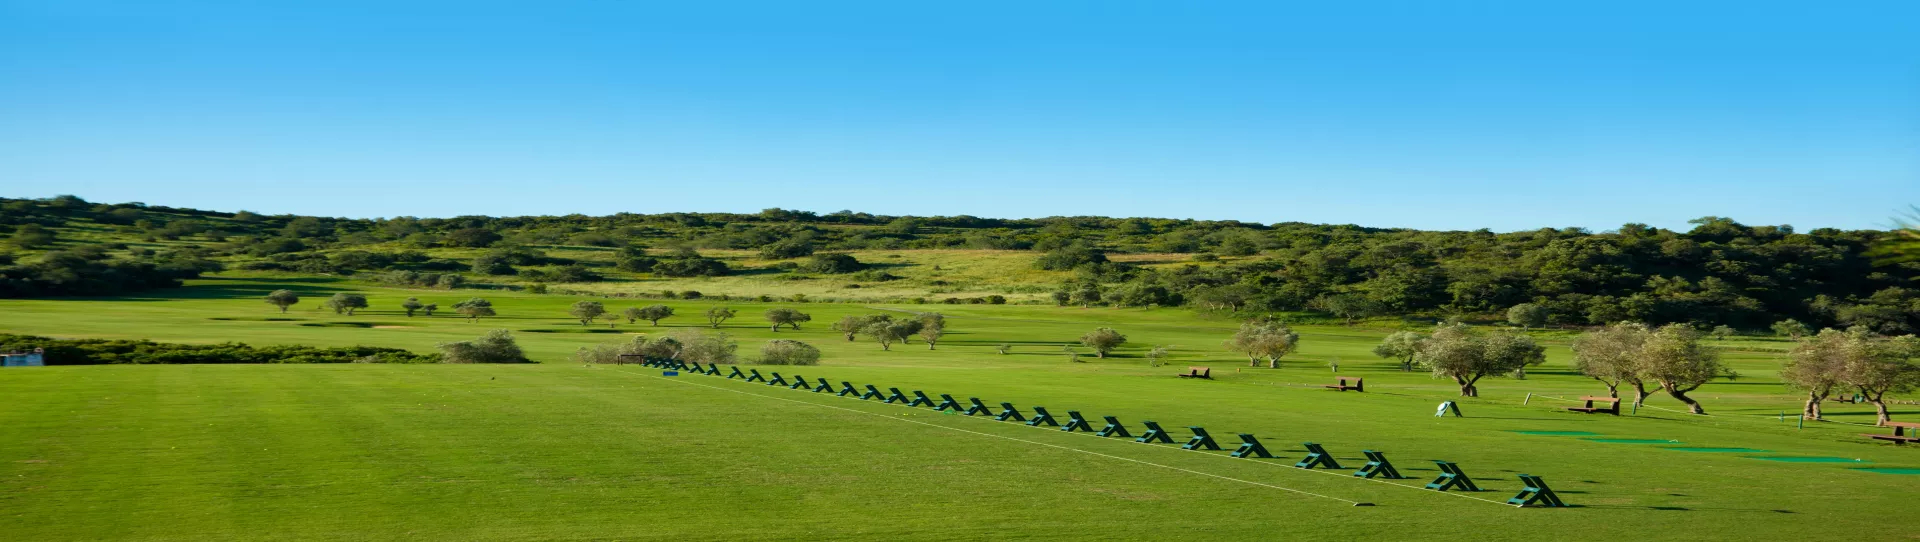 Portugal golf courses - Morgado Golf Course - Photo 1